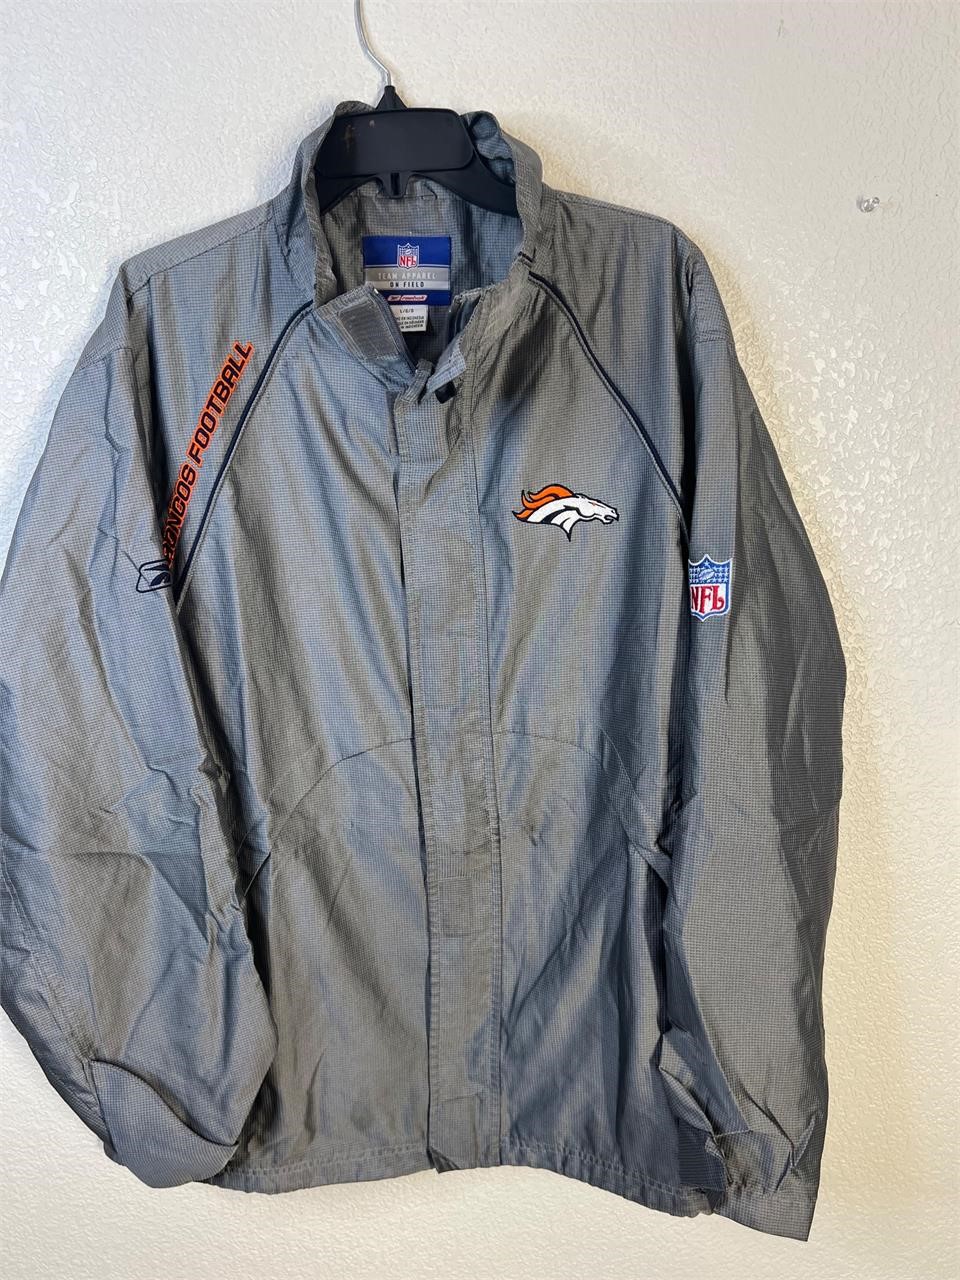 Reebok NFL Denver Broncos Jacket